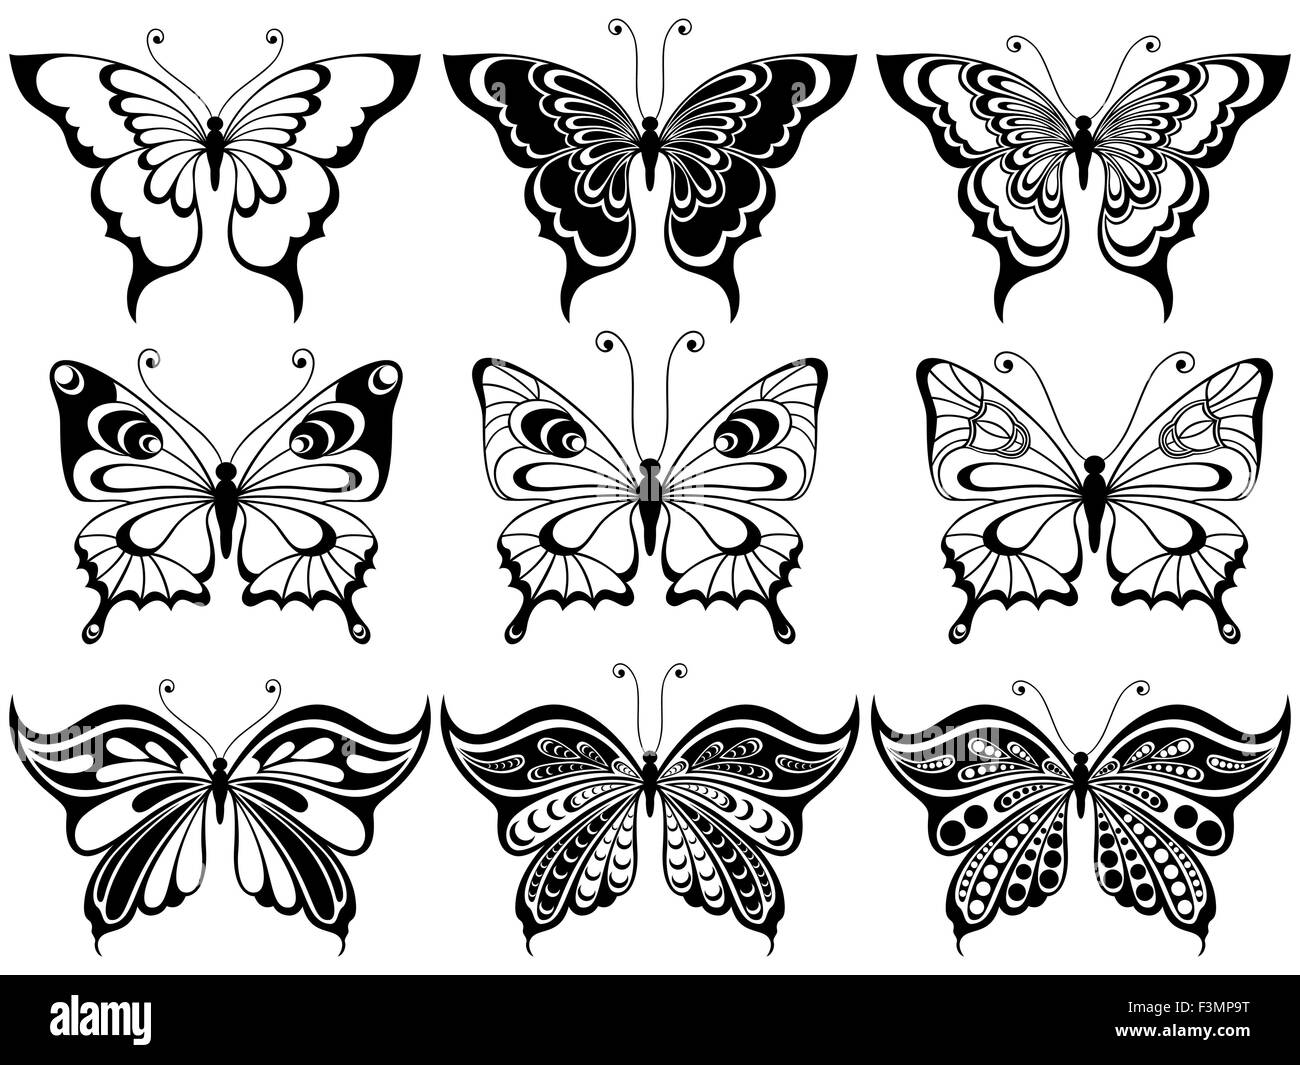 Satz von neun ornamentalen Schablonen Schmetterlinge isoliert auf einem weißen Hintergrund, Handzeichnung Vektor-illustration Stock Vektor